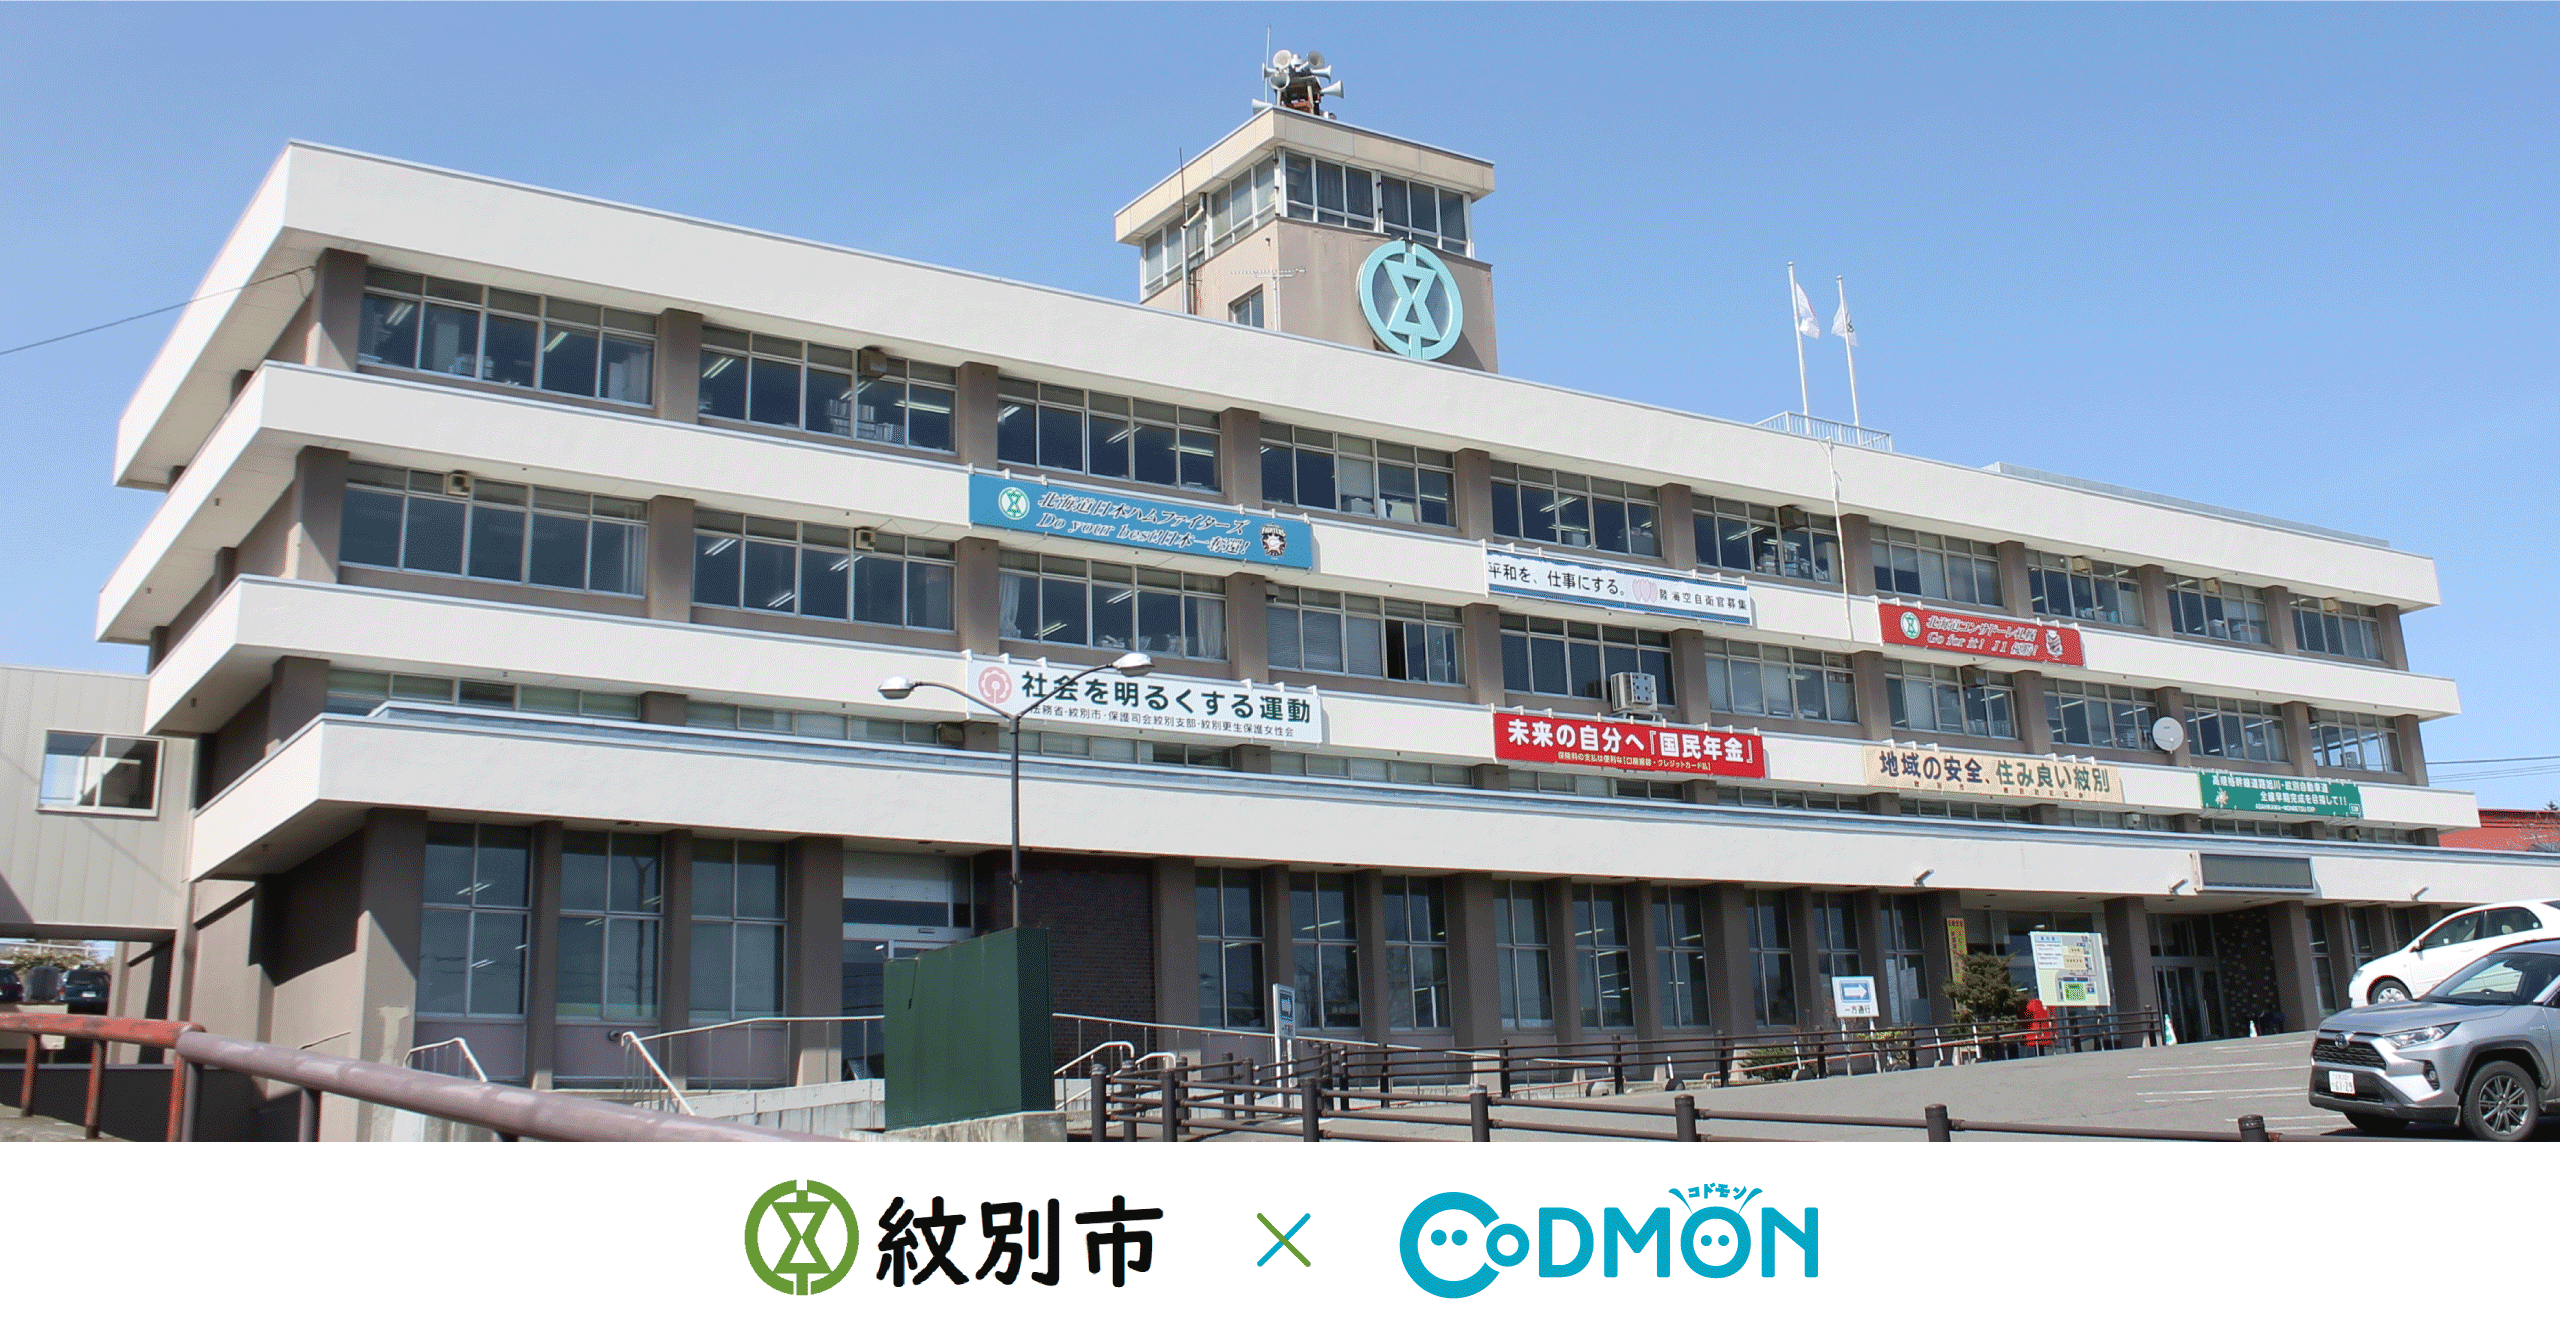 北海道の学童において初導入 北海道紋別市の公立学童保育においてコドモン導入のお知らせ